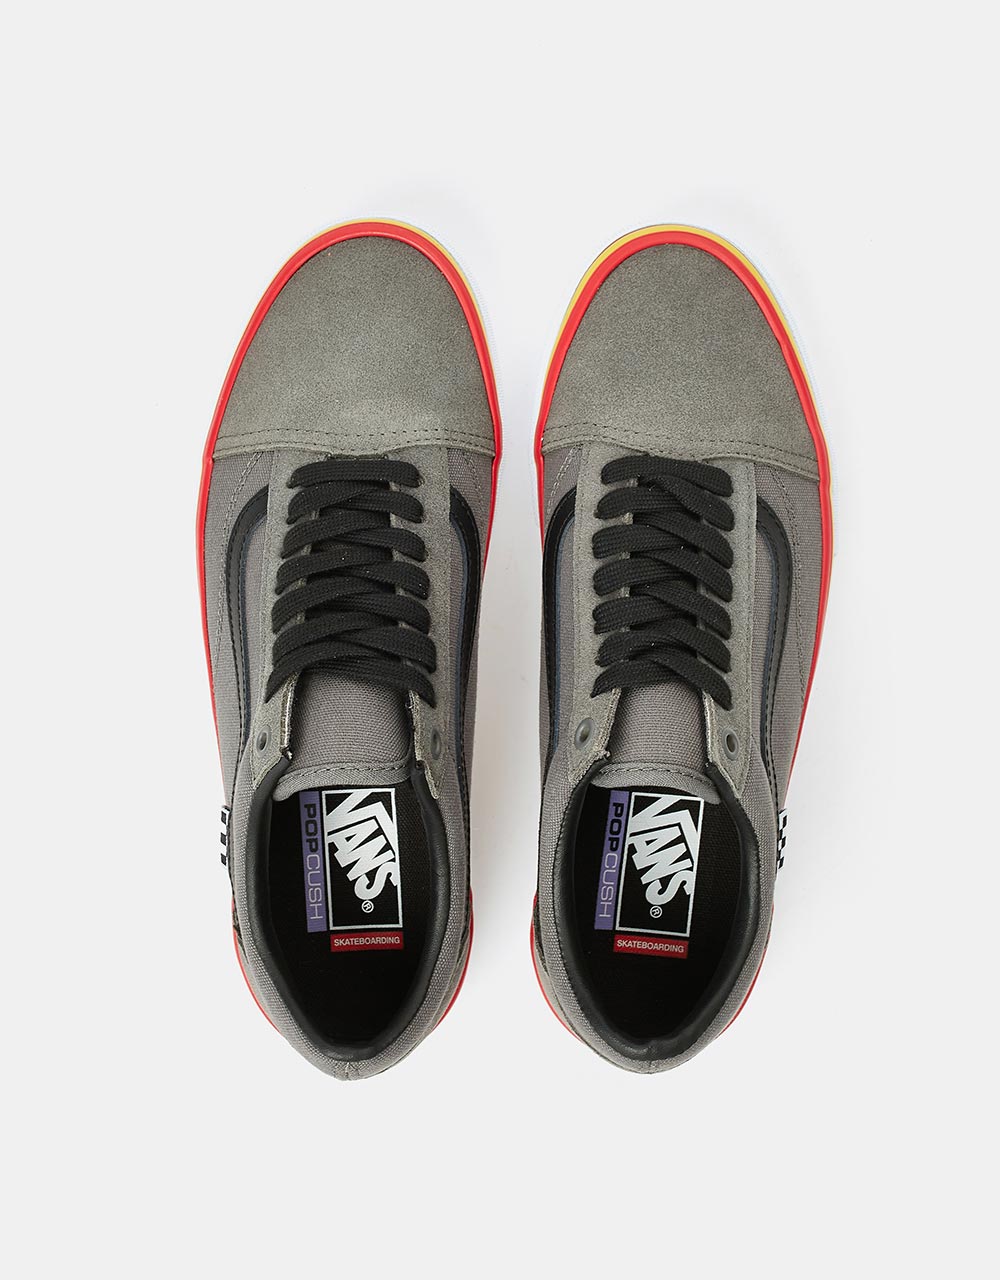 Vans Skate Old Skool Shoes - (Rasta) Grey